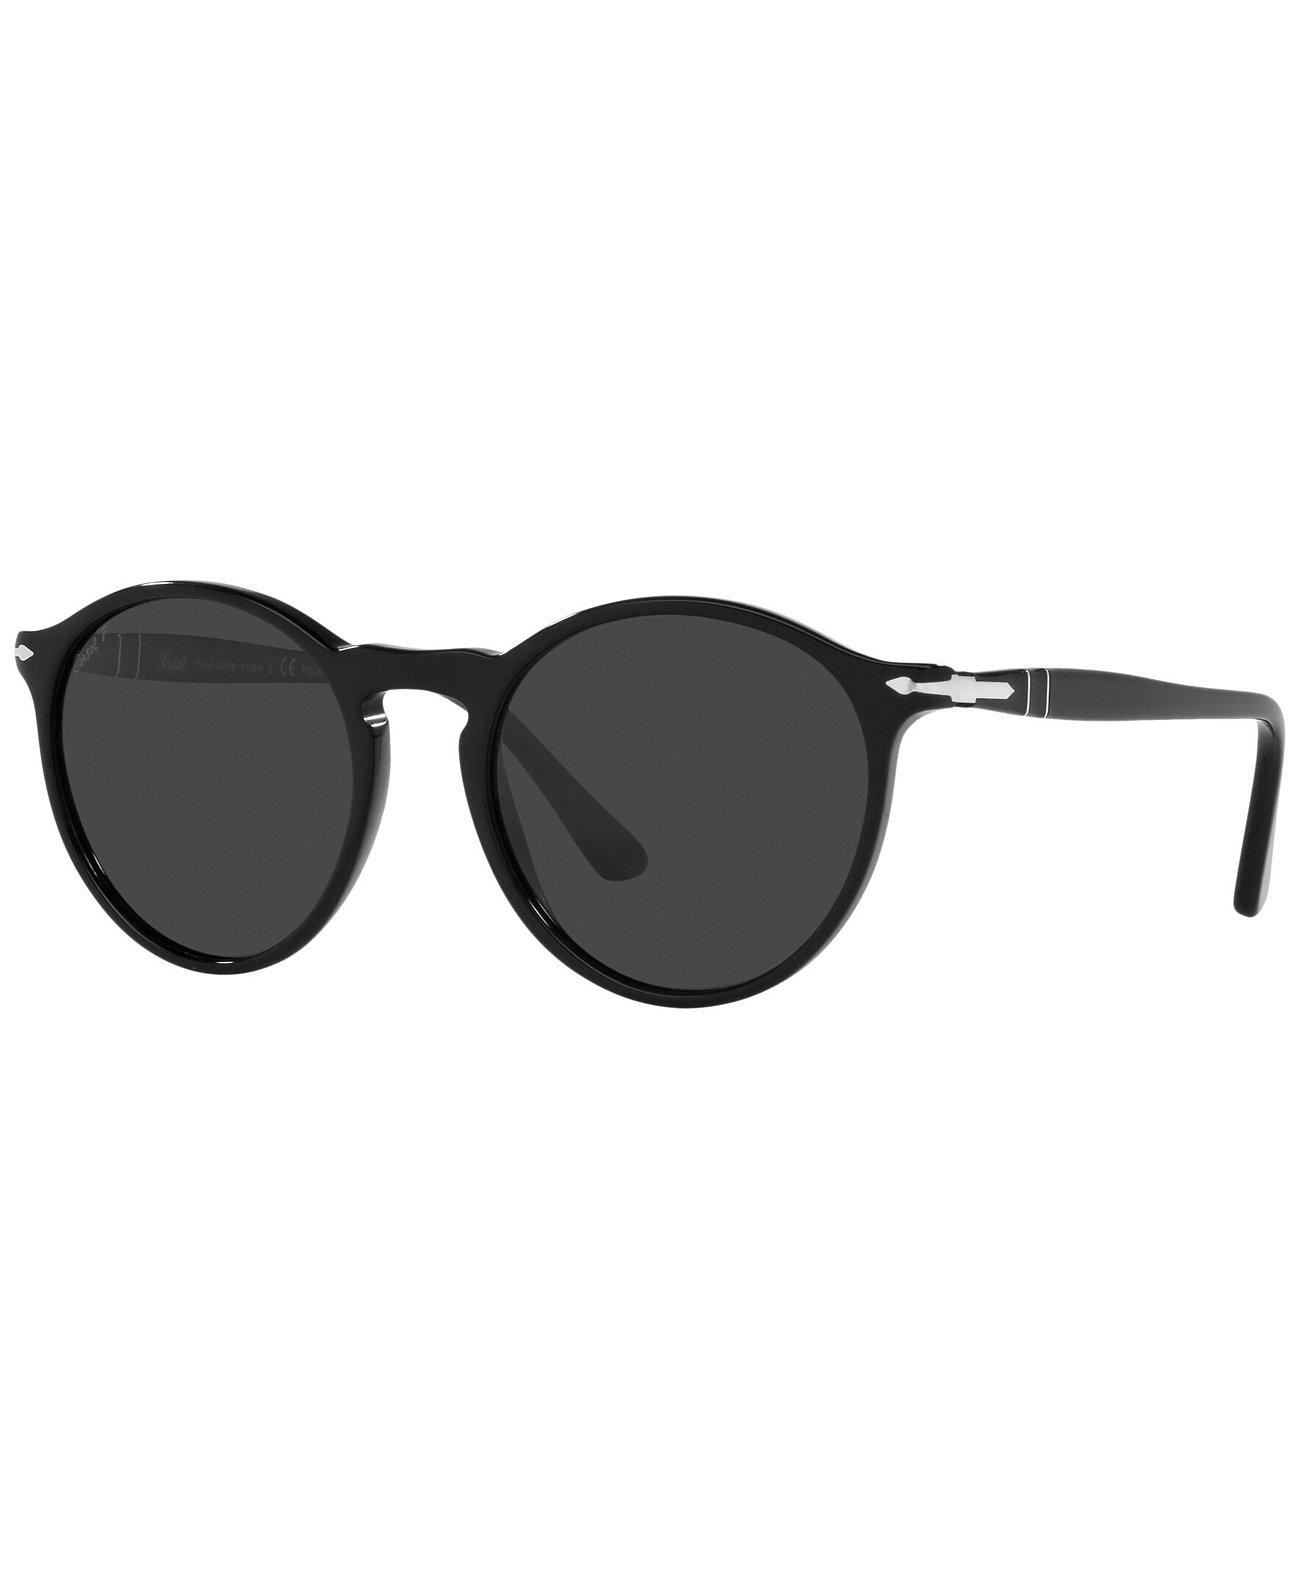 Поляризованные солнцезащитные очки унисекс, PO3285S 52 Persol